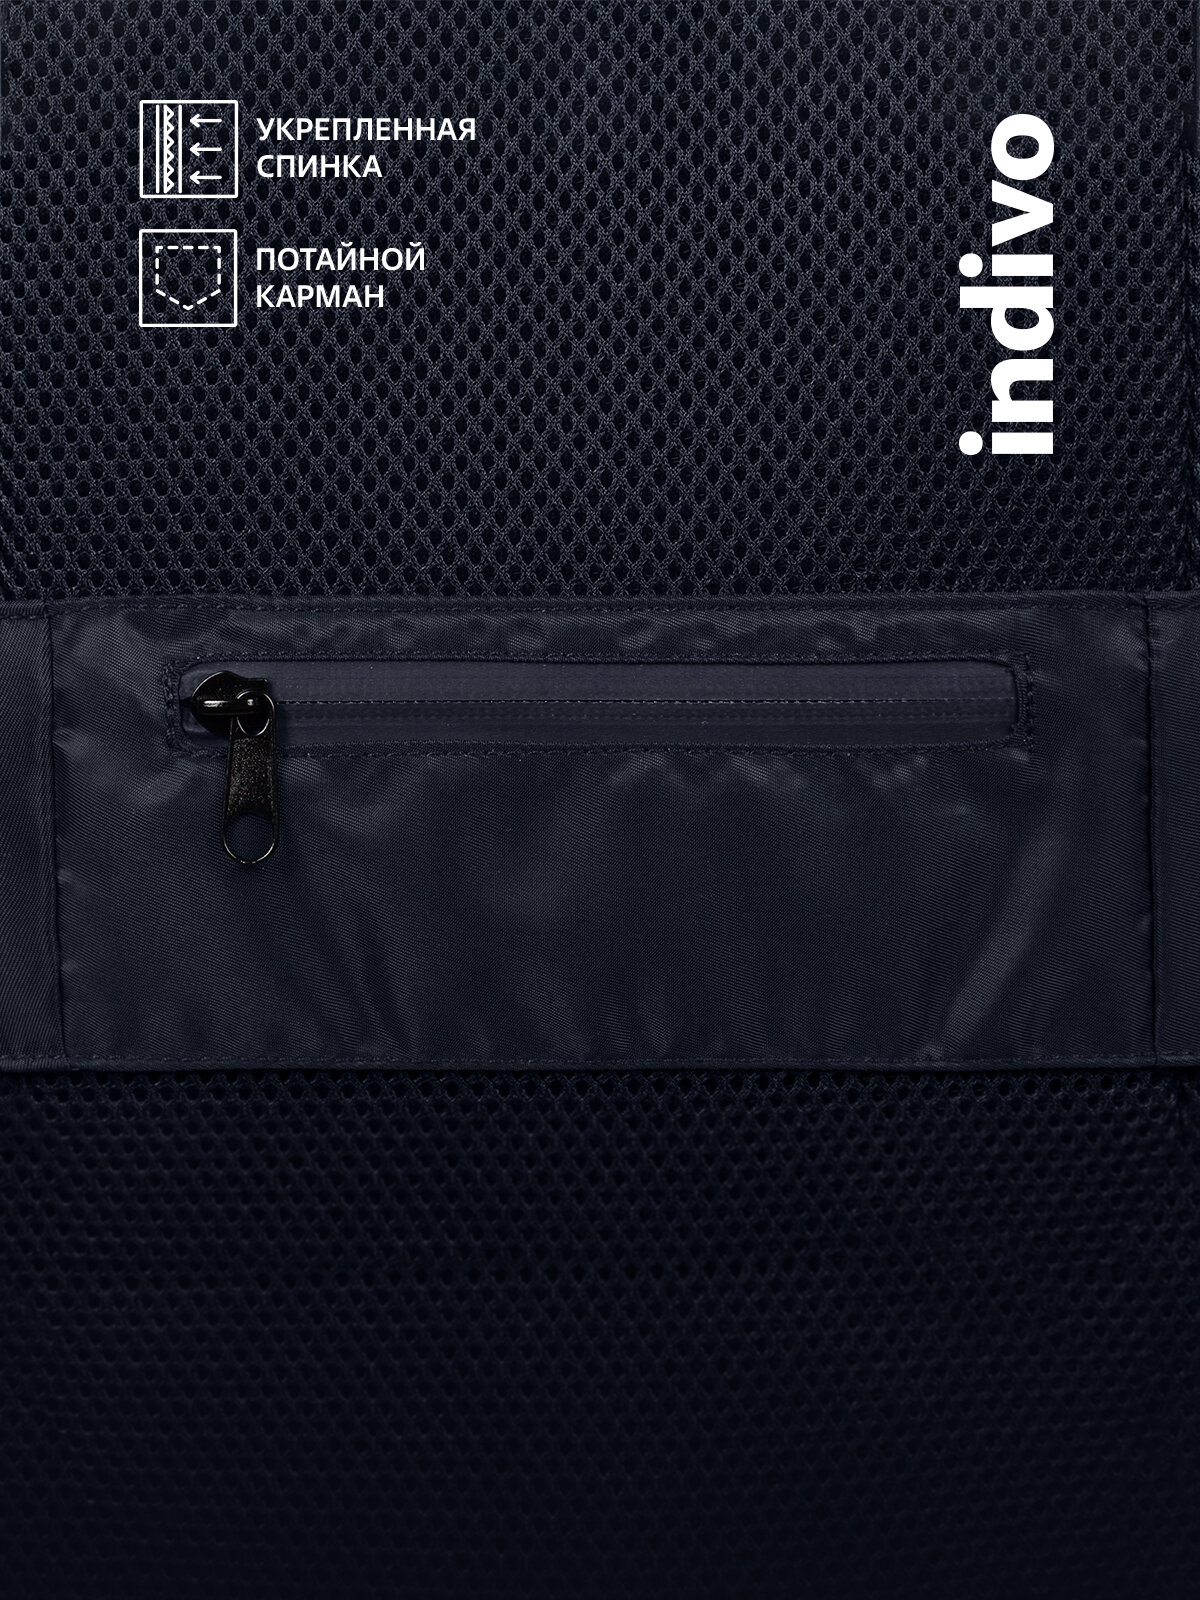 Рюкзак coolStuff мужской женский унисекс городской, темно-синий с бежевым